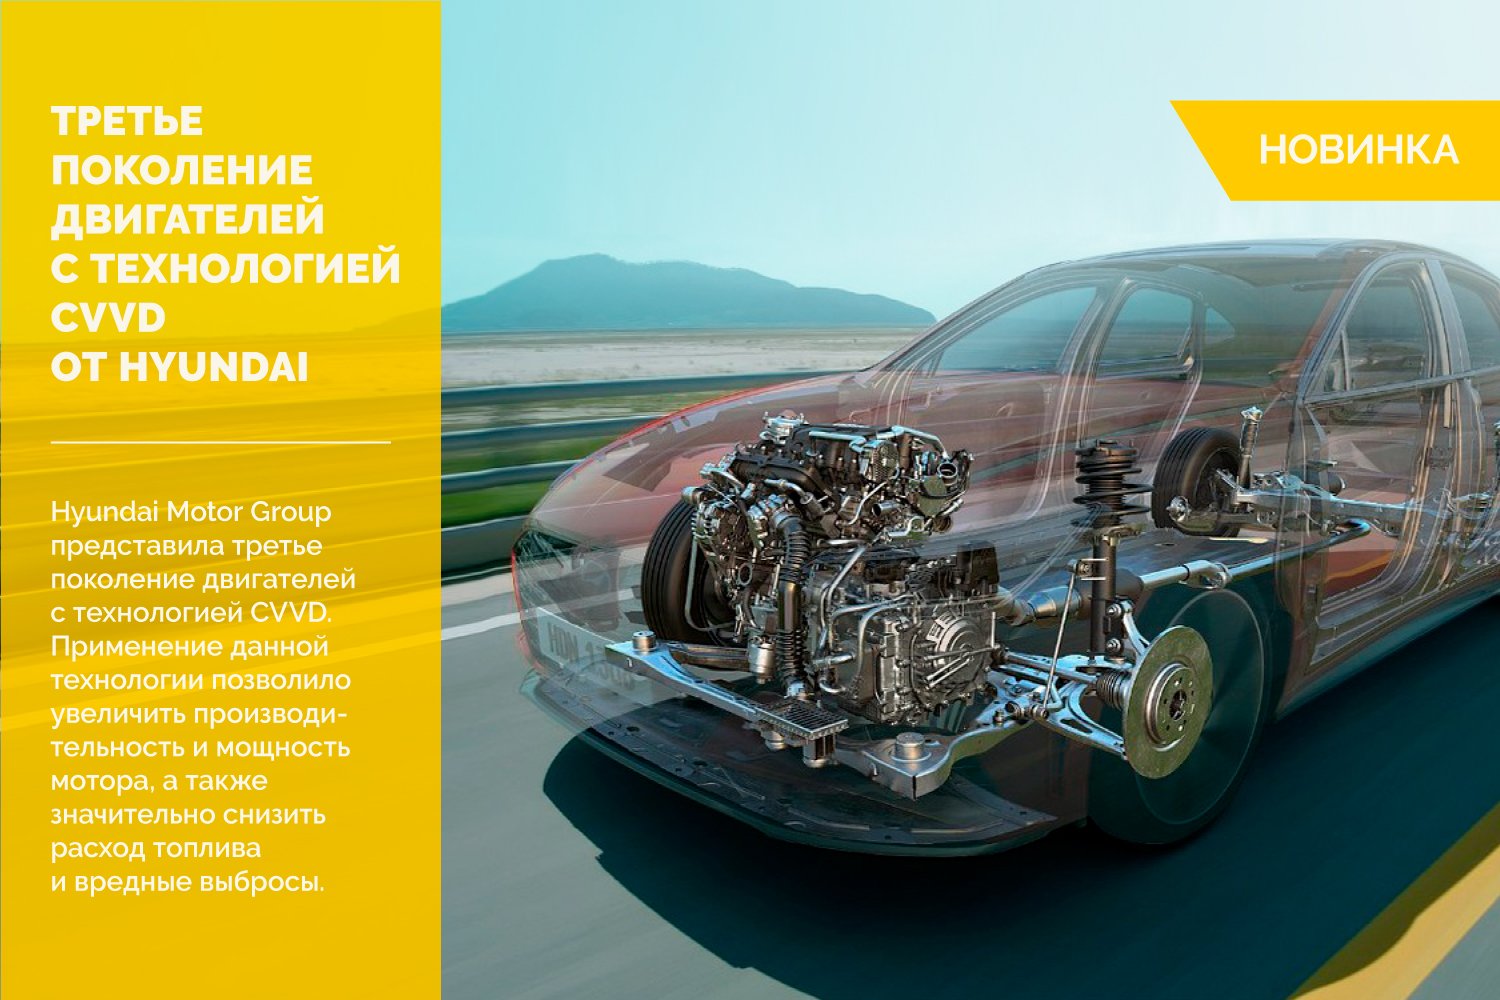 Hyundai Motor Group представила третье поколение двигателей с технологией CVVD